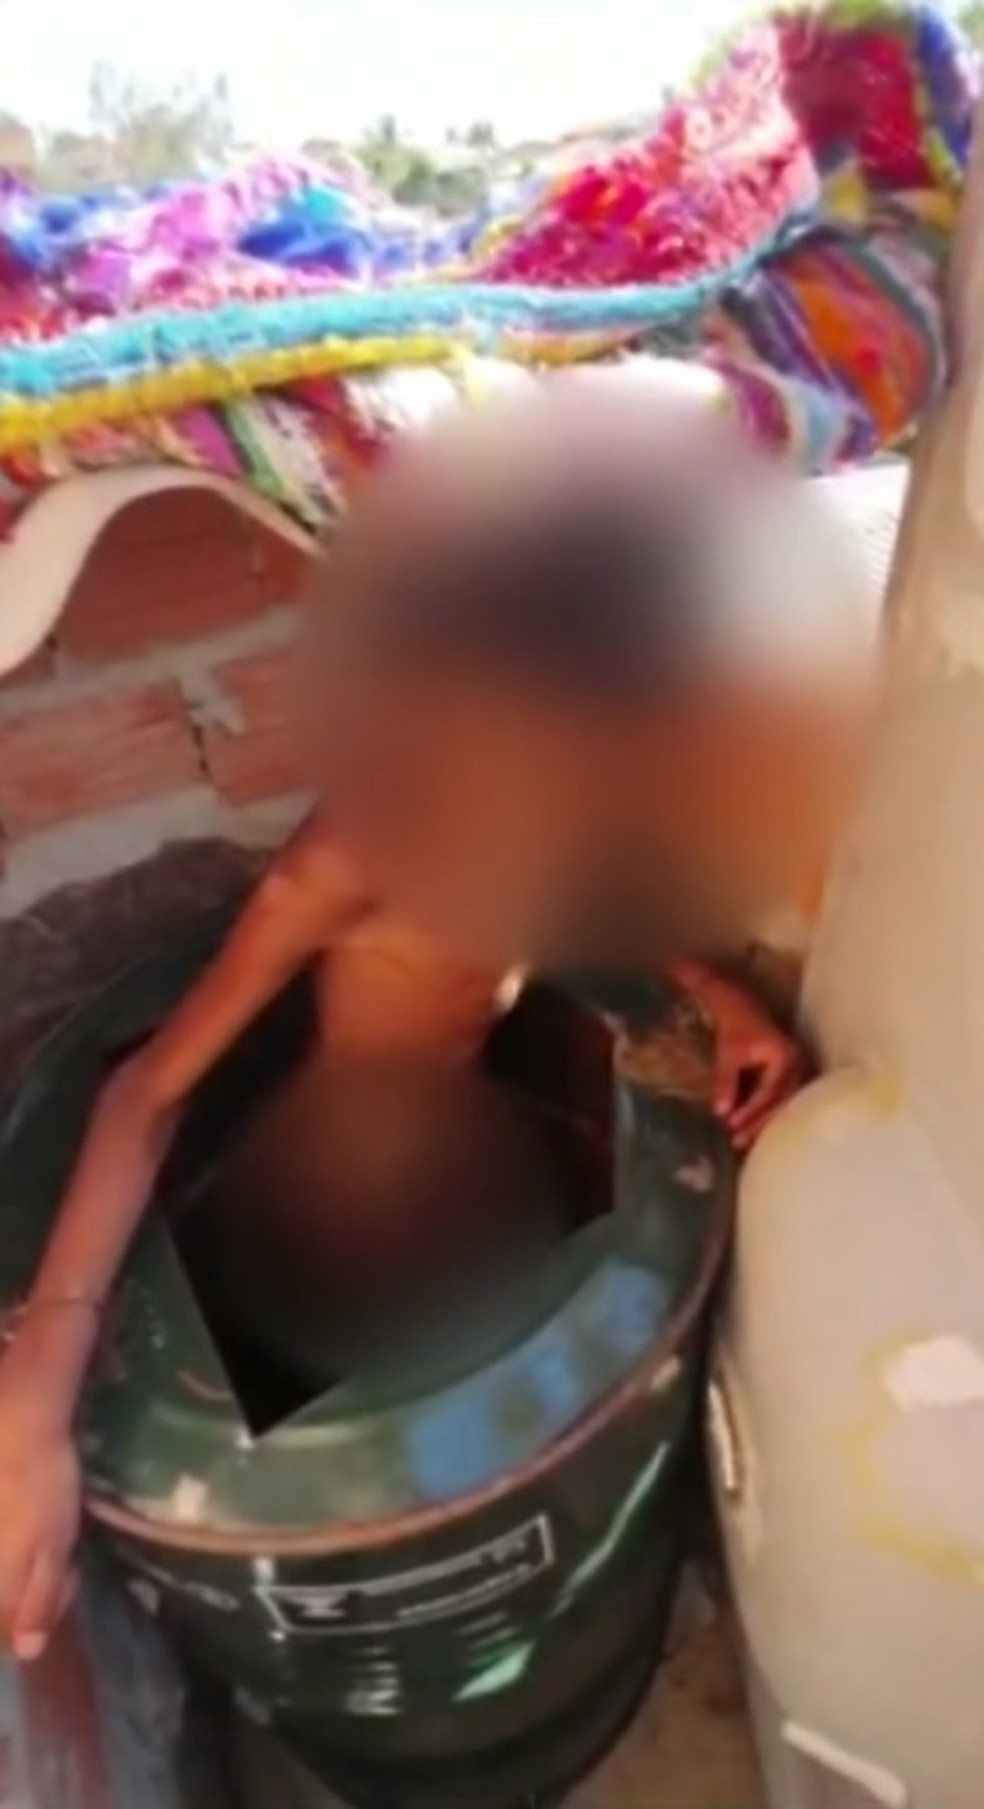 Criança era mantida amarrada em barril pelo pai em Campinas — Foto: Reprodução/Rede Globo